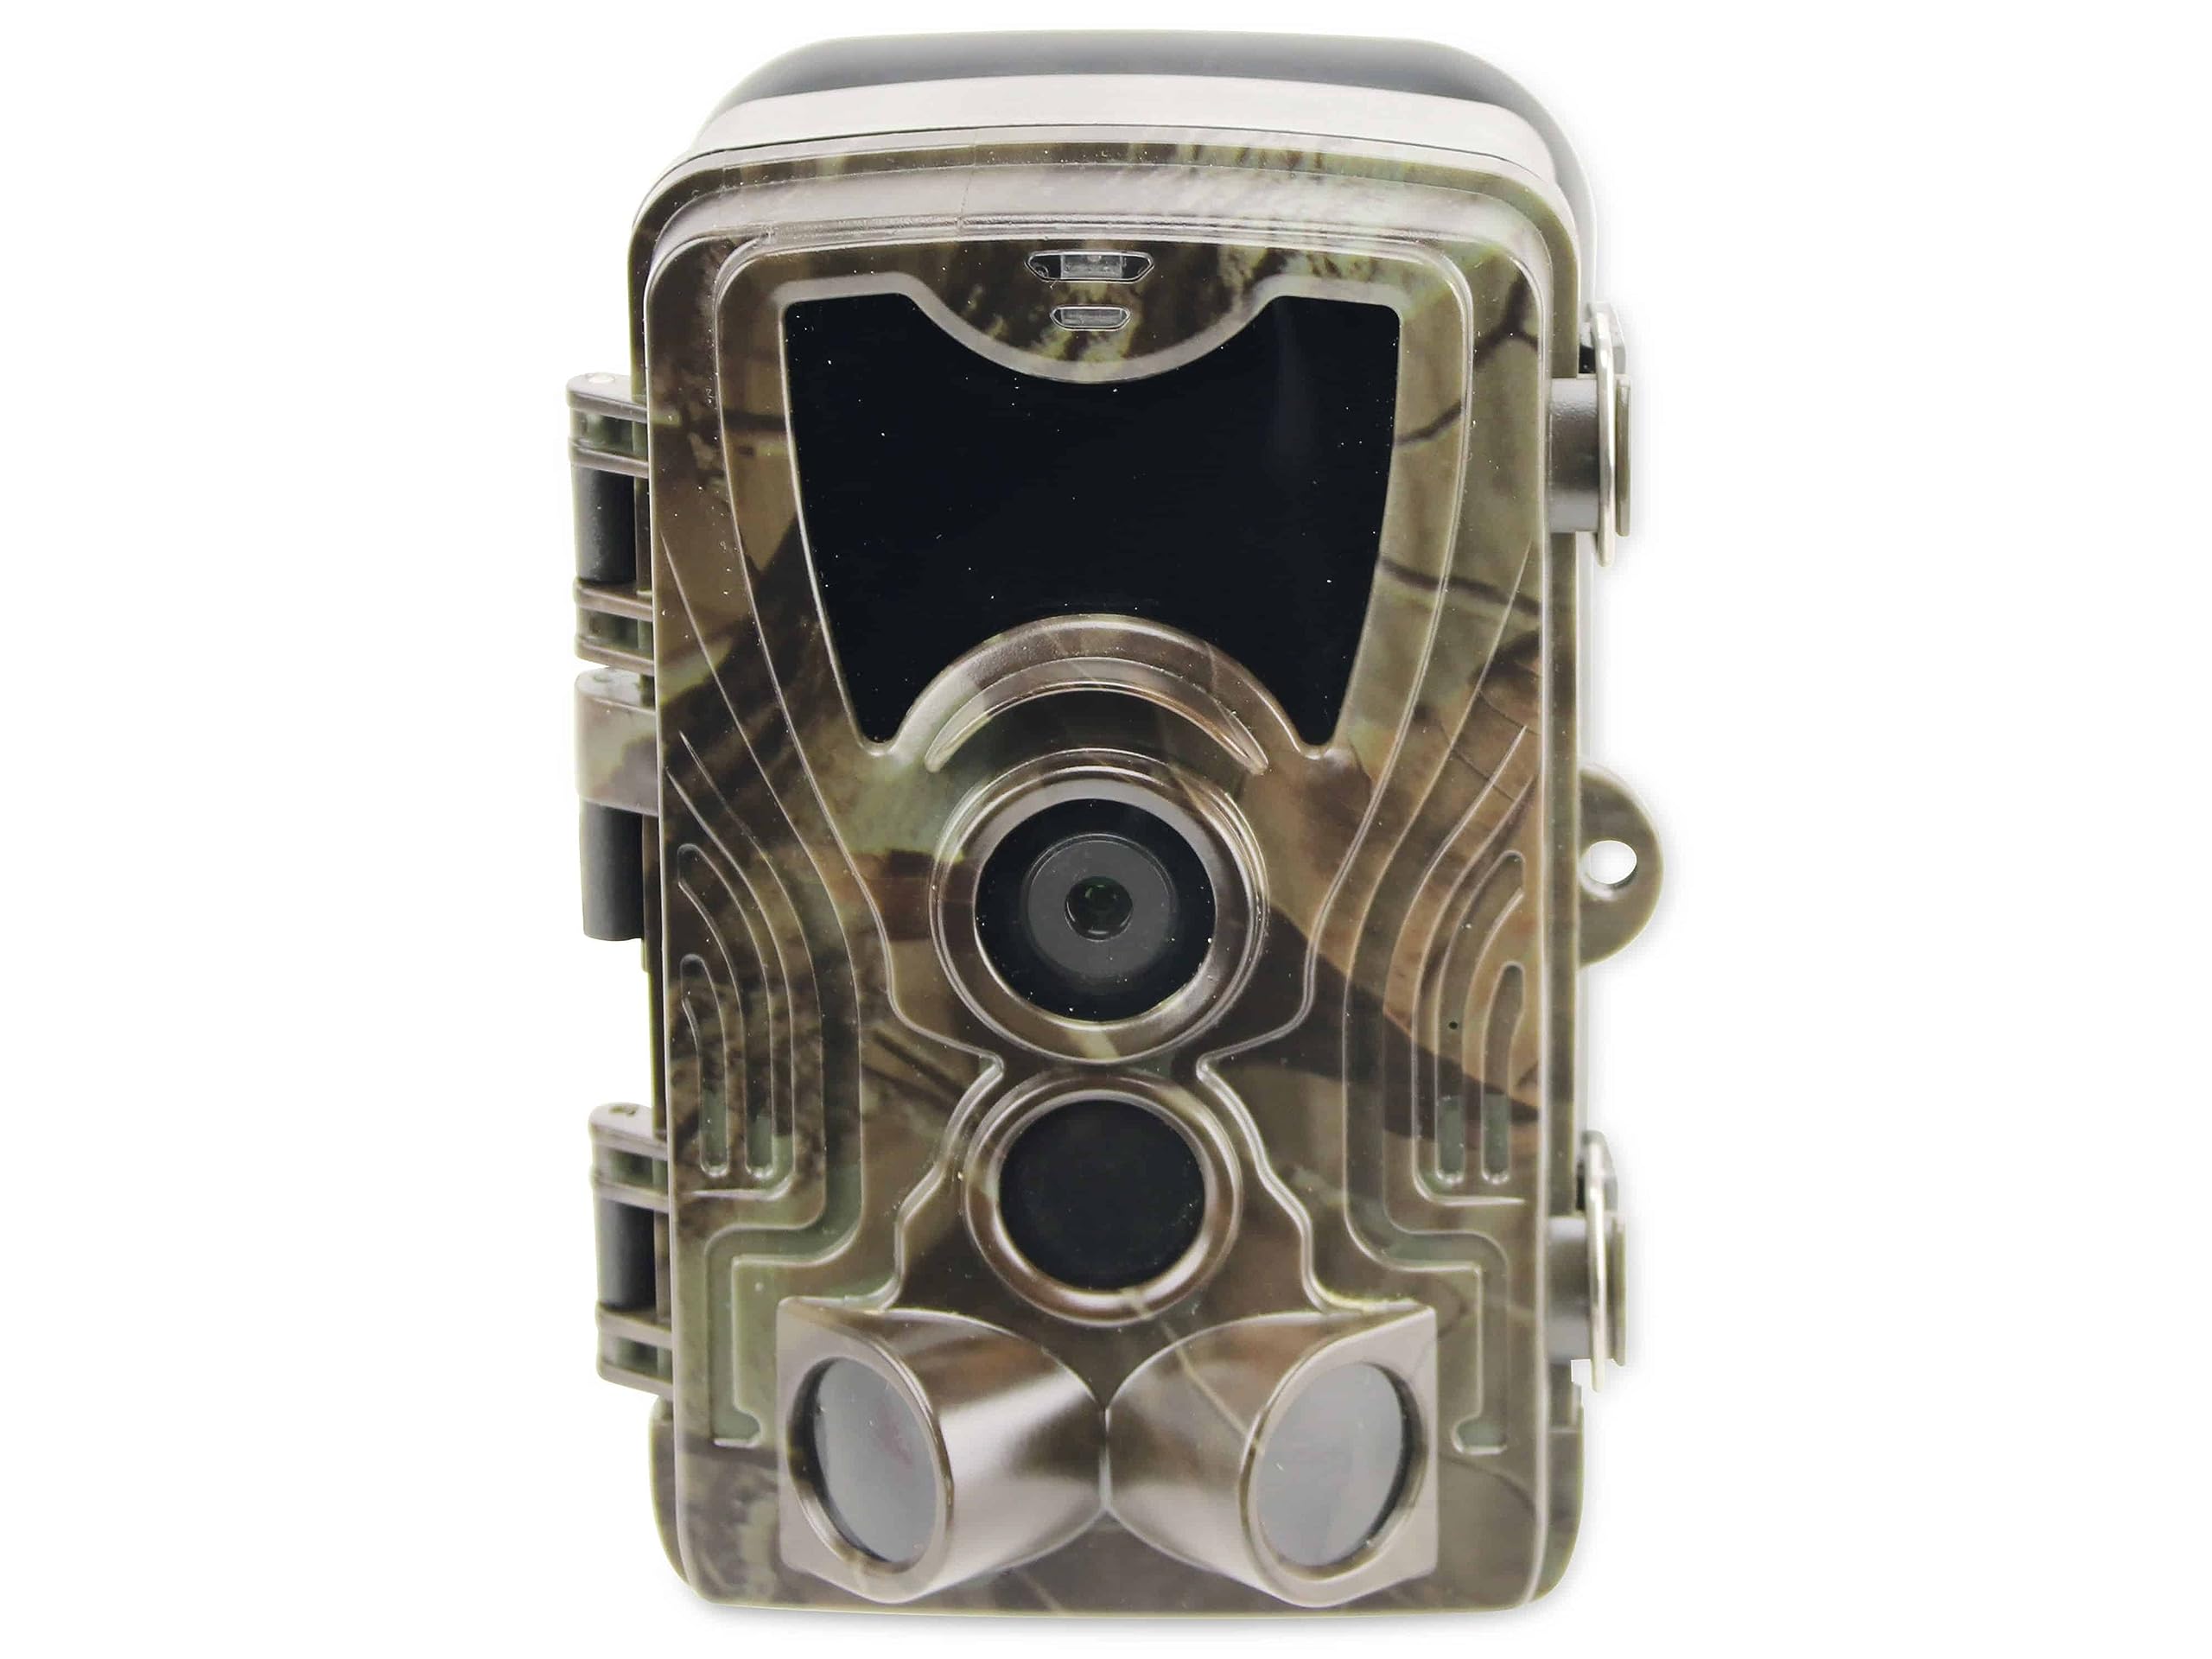 PremiumBlue Wildkamera WC-1701 | 5 Megapixel, 2,7K | PIR-Bewegungsmelder mit 120° Erfassungswinkel | Bis 20 M Infratotreichweiche | MicroSD-Slot bis 256 GB | Perfekt für Wildbeobachtung